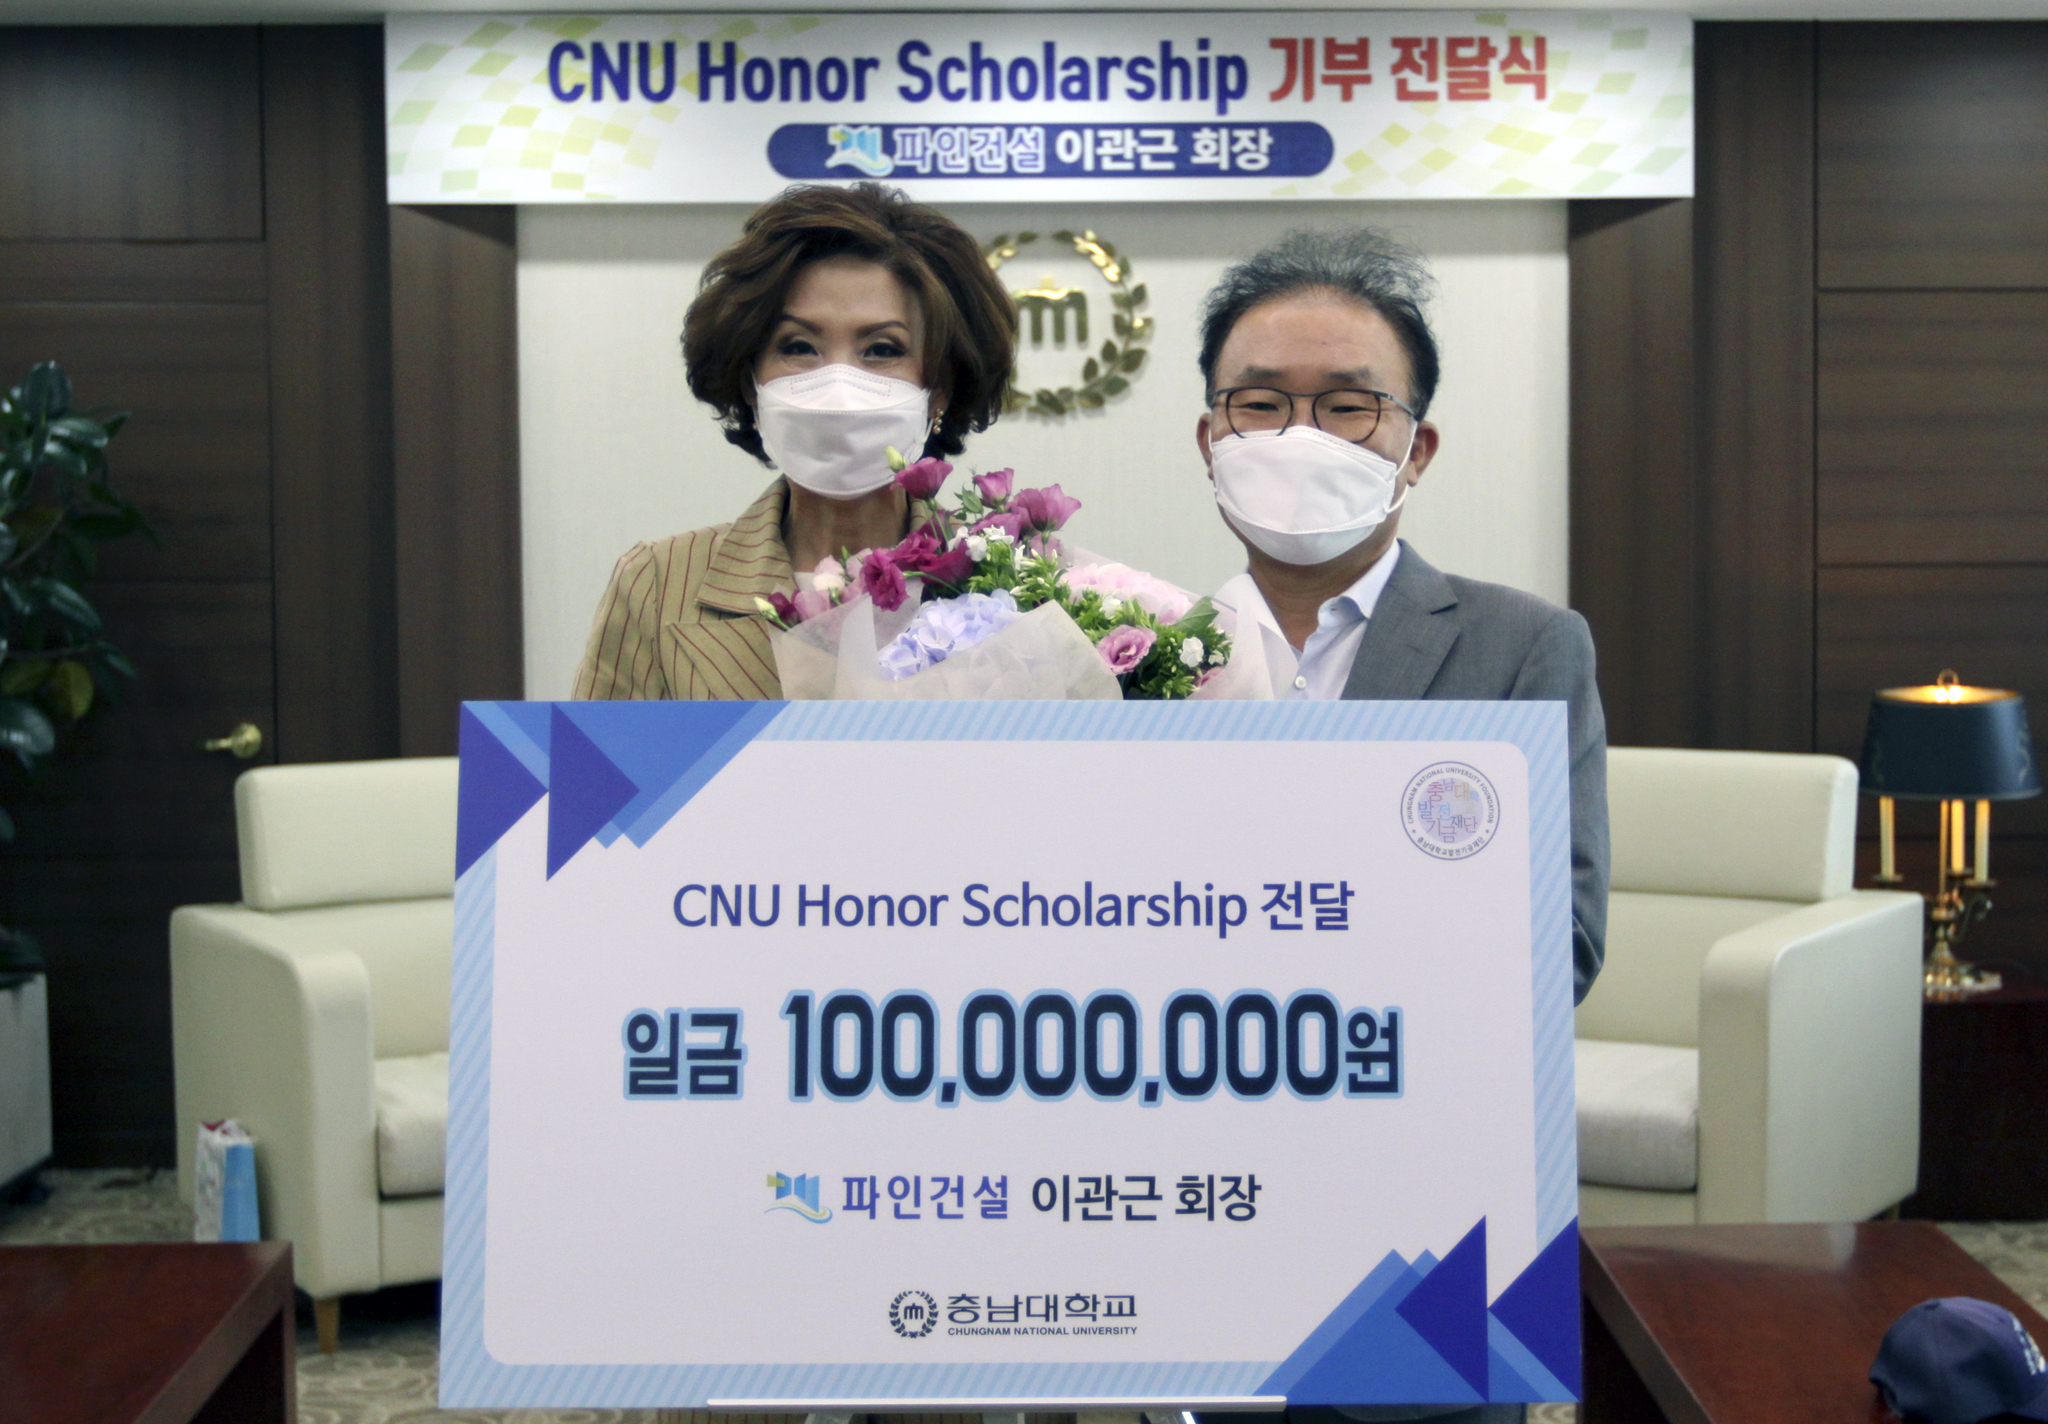 파인건설(주) 이관근 회장, ‘CNU Honor Scholarship’ 장학기금 1억원 기부 사진1